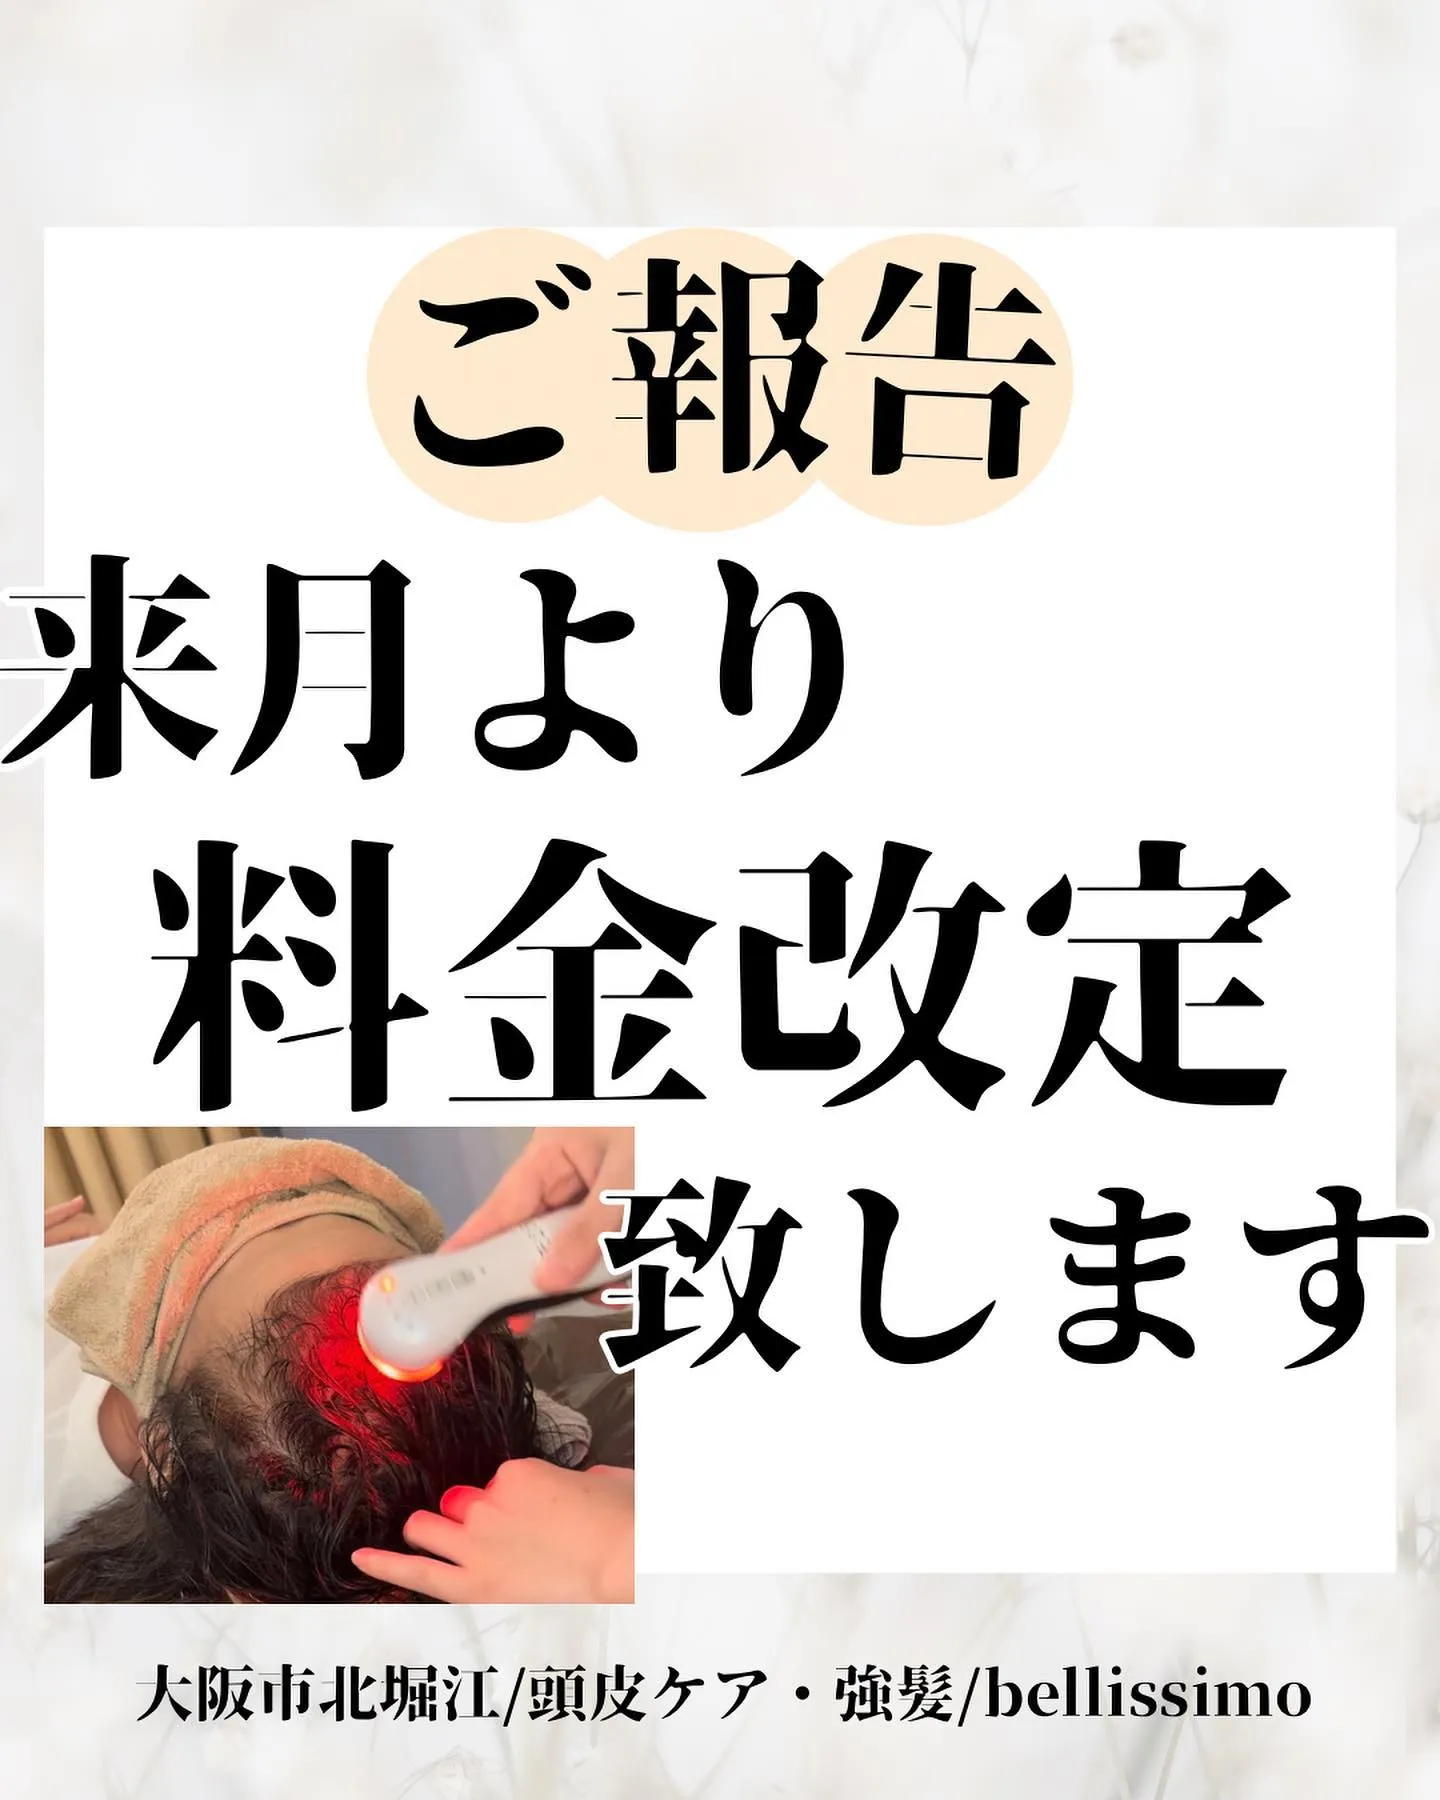 大阪市西区で頭皮ケアができるプライベートエステサロン